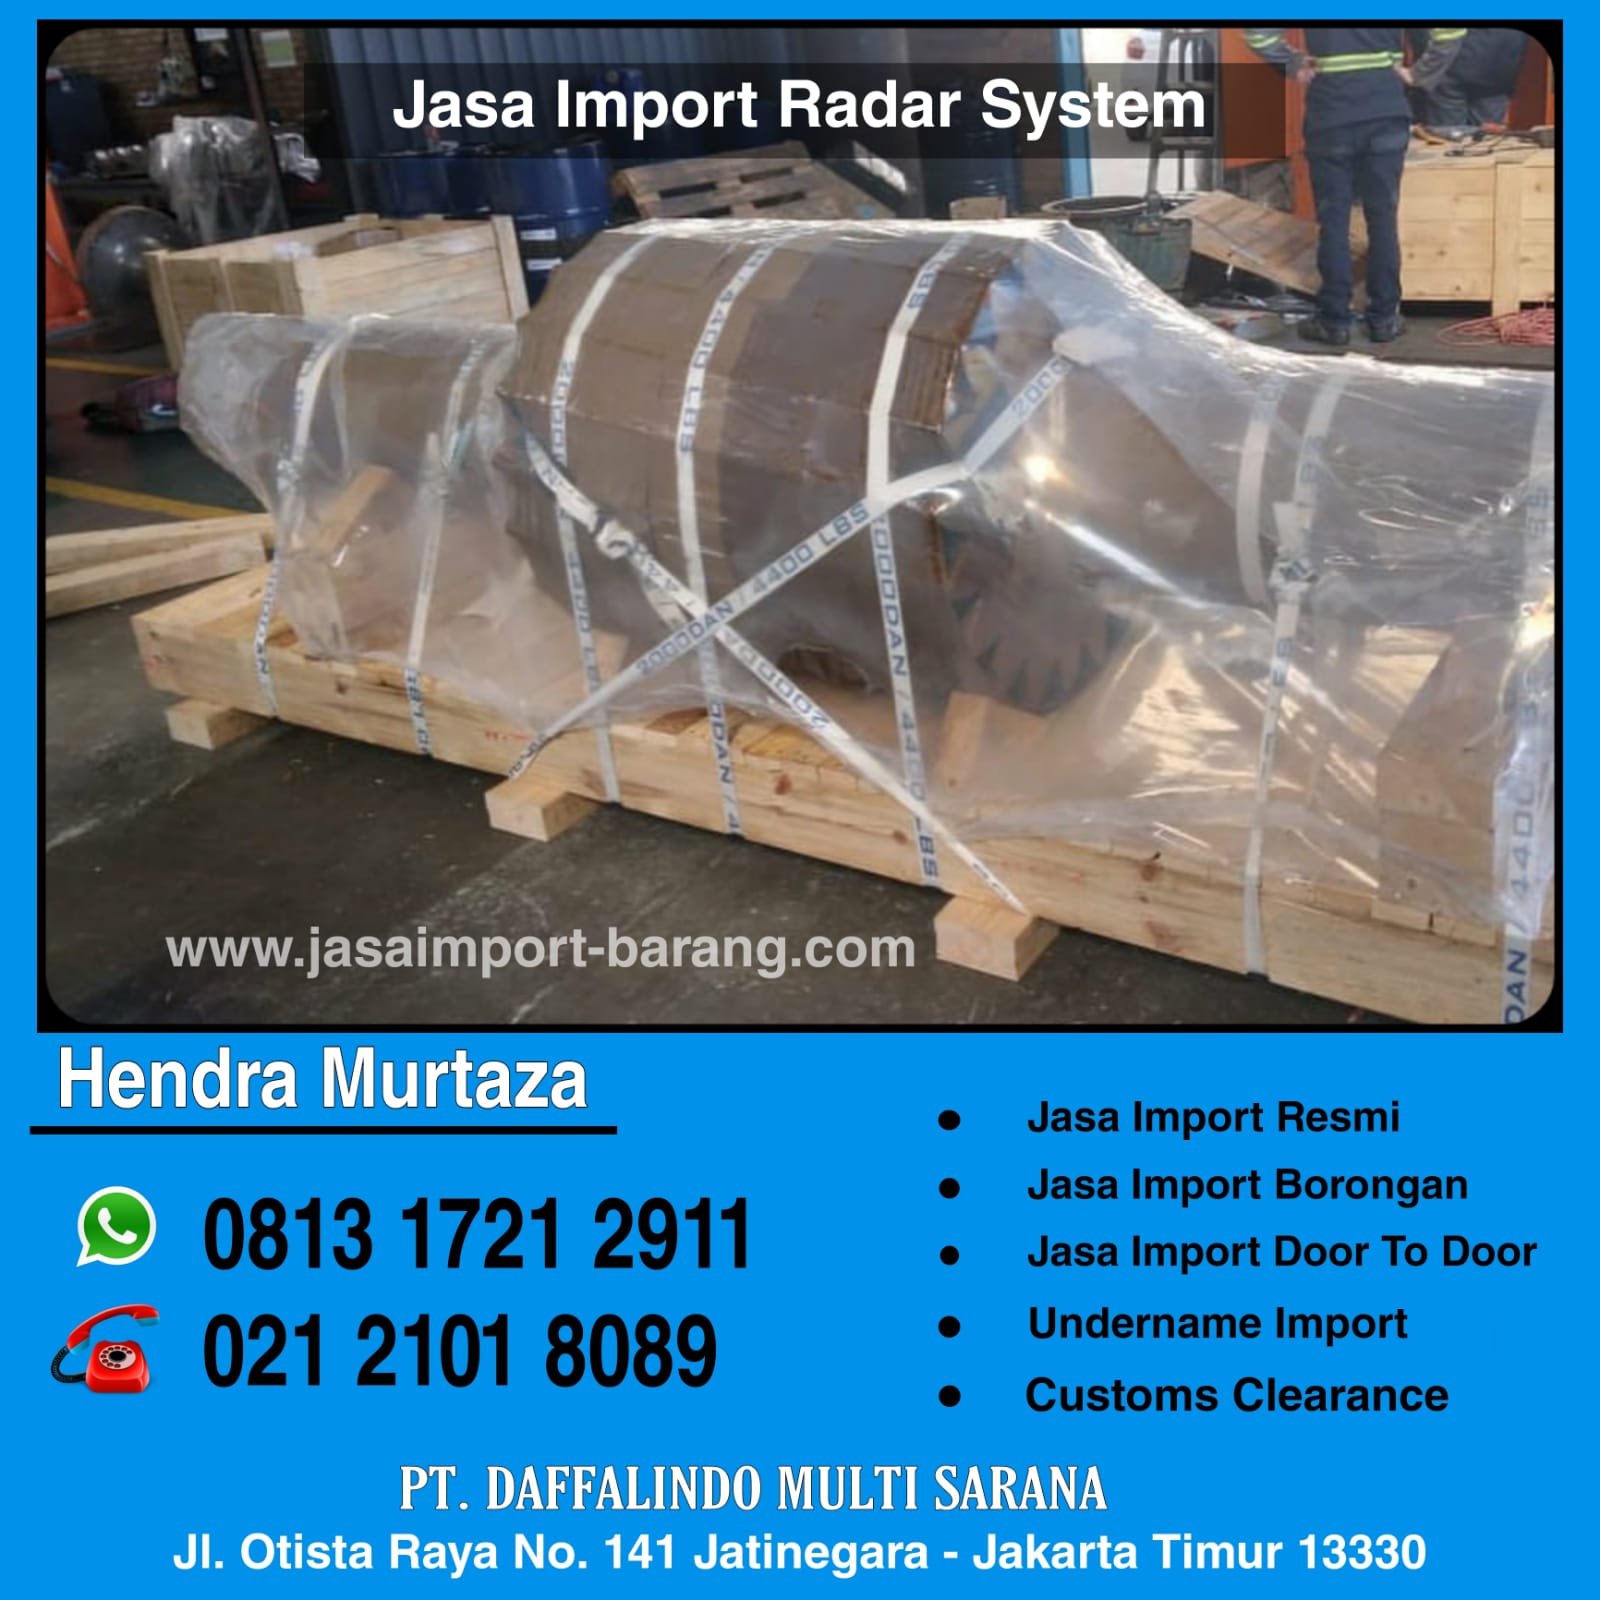 Jasa_Import_Radar_System.jpg